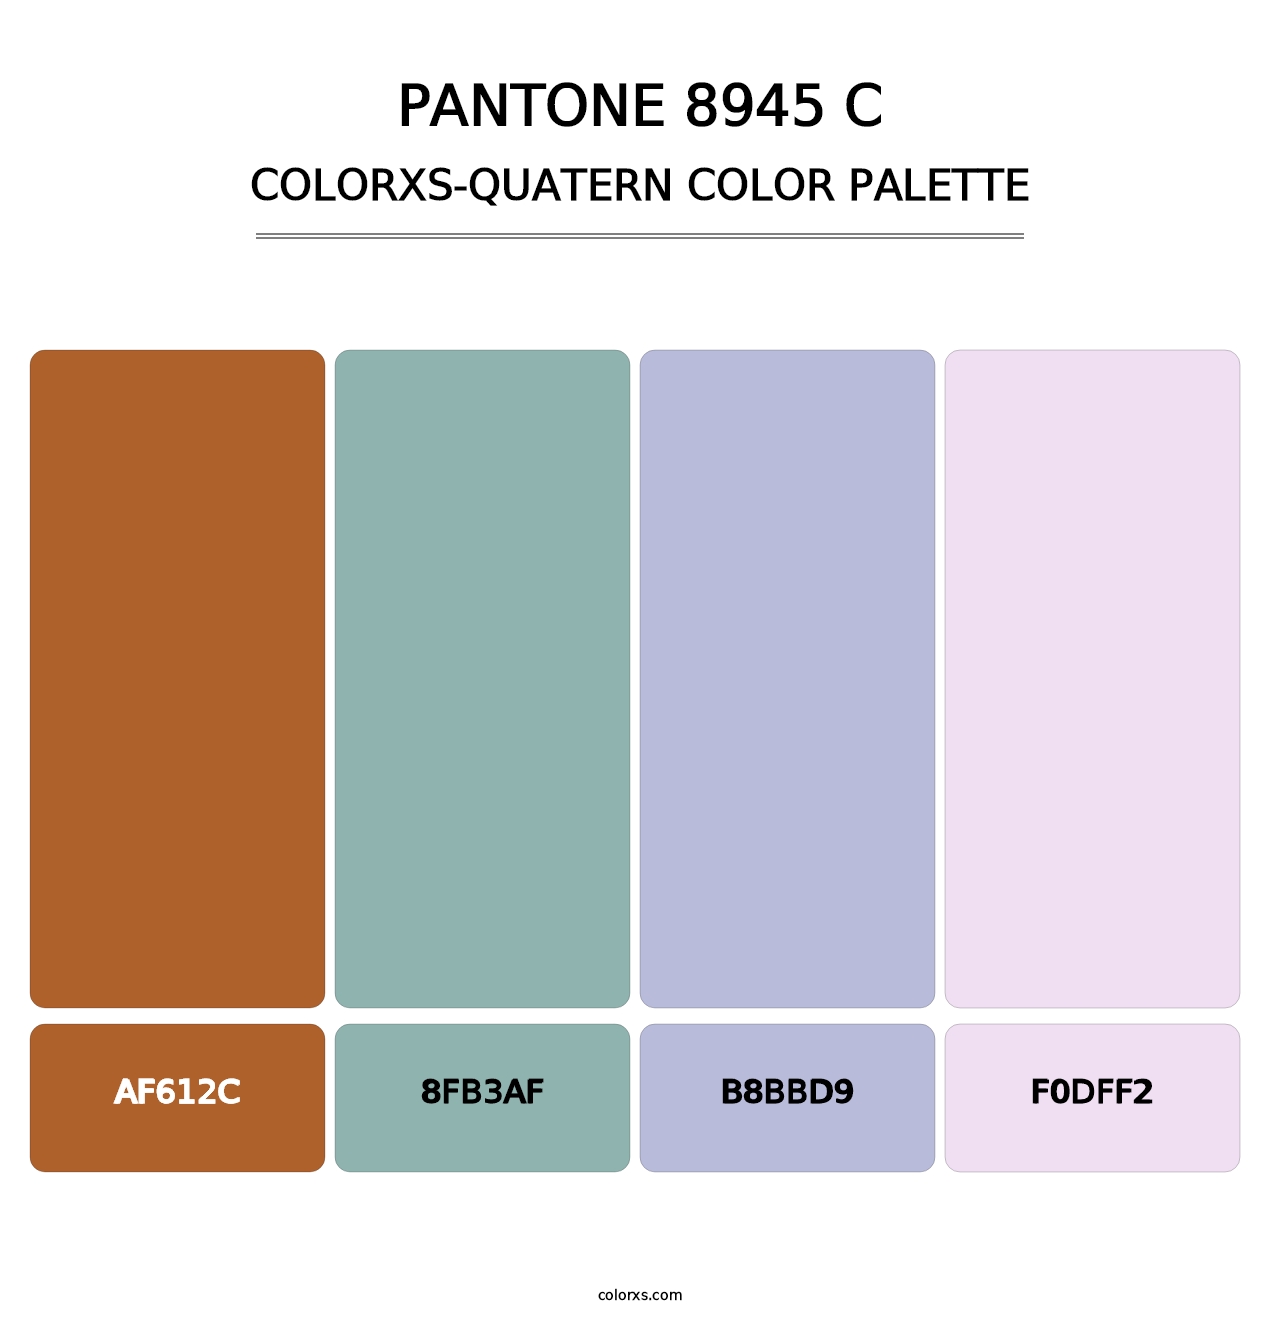 PANTONE 8945 C - Colorxs Quatern Palette